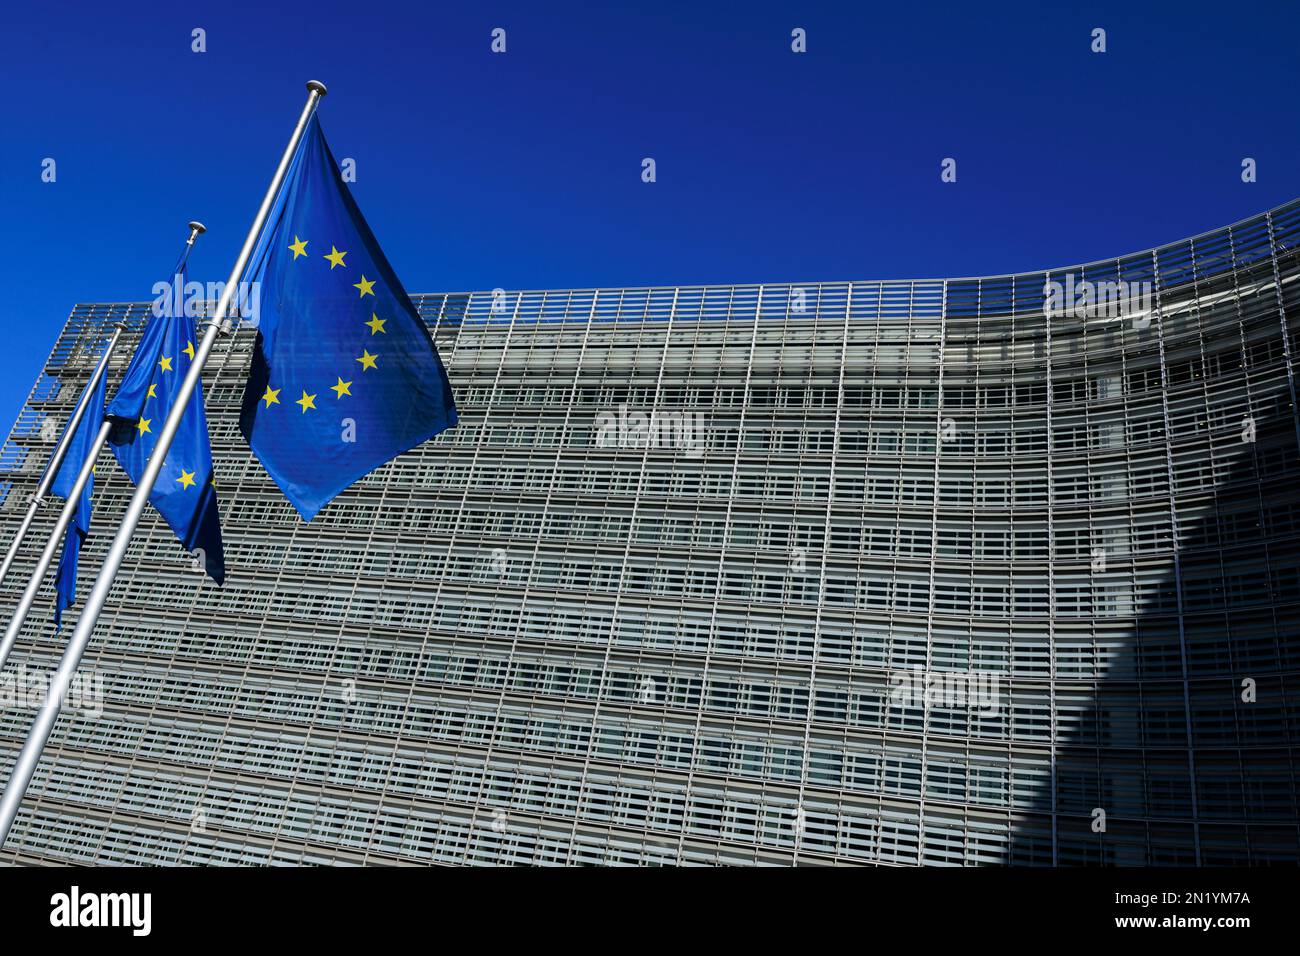 Drapeaux européens devant le bâtiment Berlaymont, siège de la Commission européenne à Bruxelles, Belgique Banque D'Images